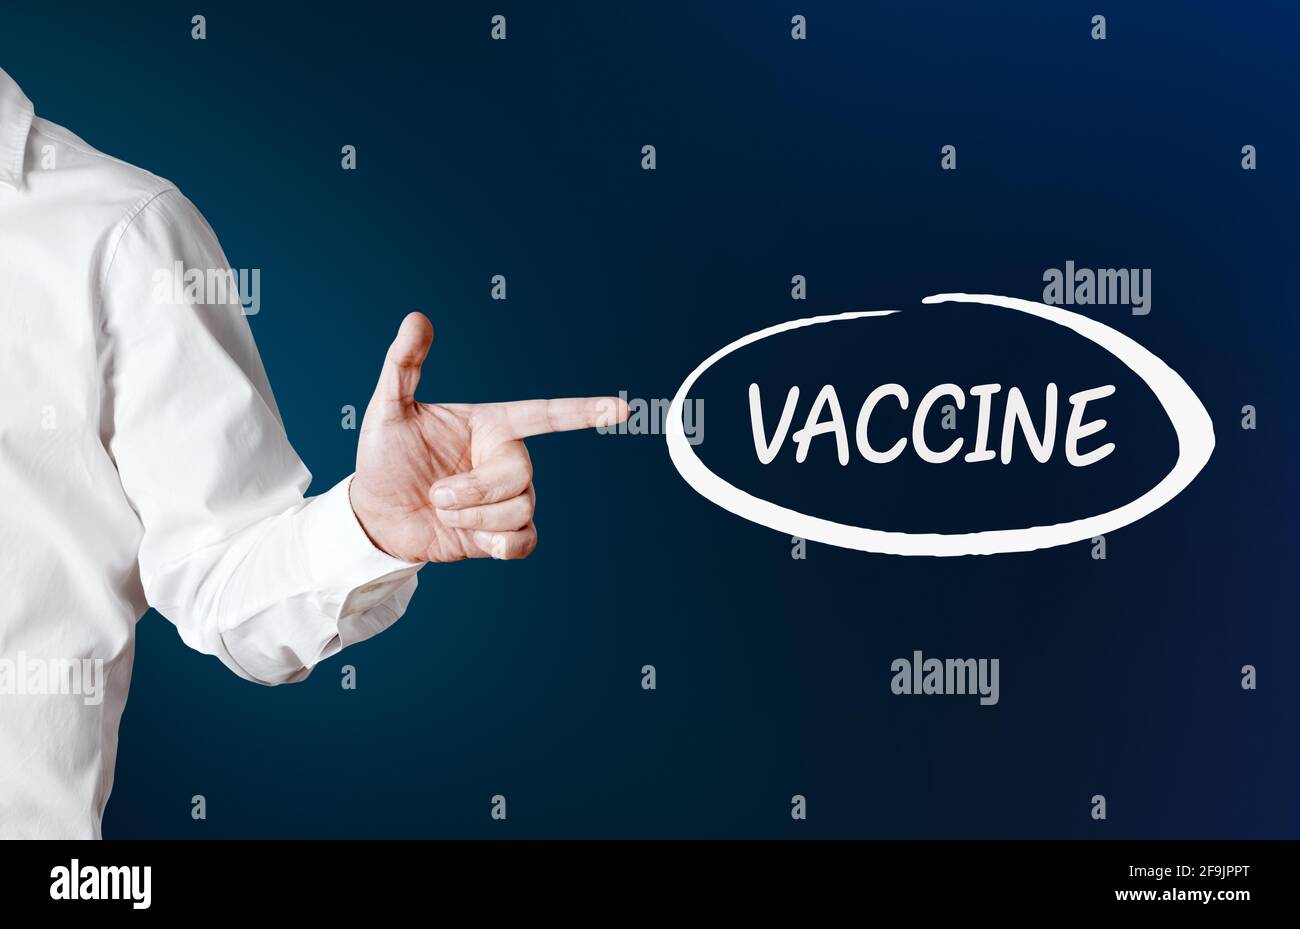 La main masculine pointe vers le mot vaccin avec un cercle sur fond bleu. Recherche sur les vaccins ou concept de mouvement anti-vaccination. Banque D'Images